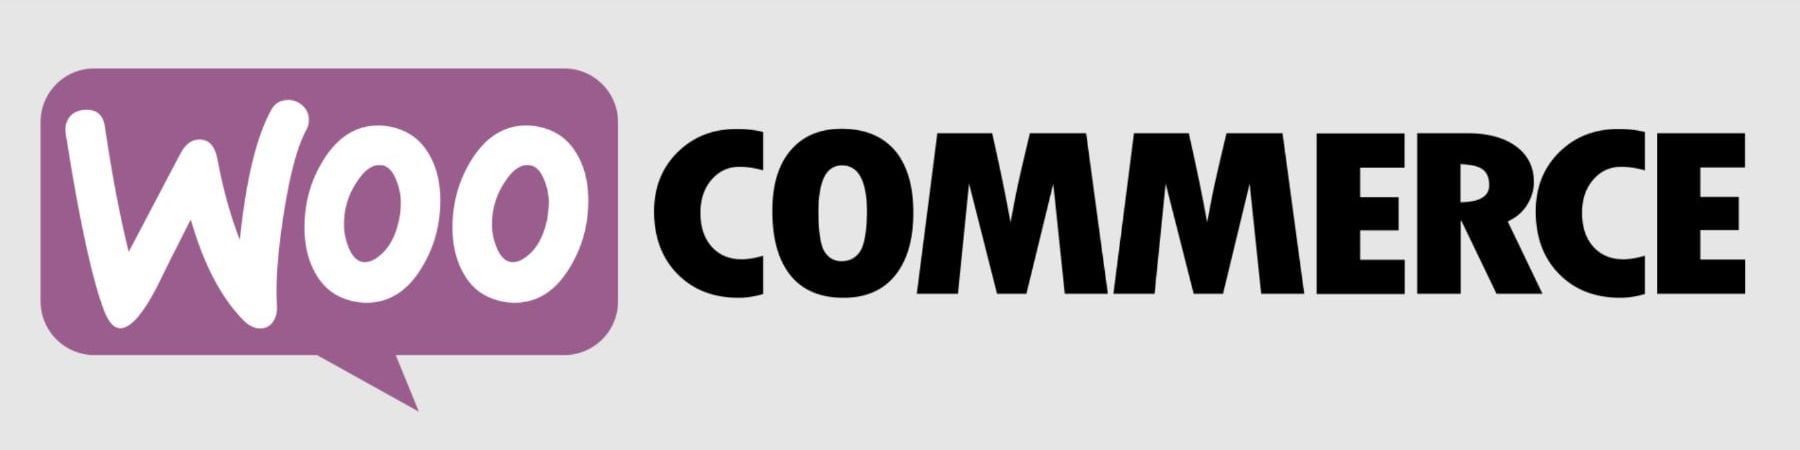 WooCommerce Logo Mark